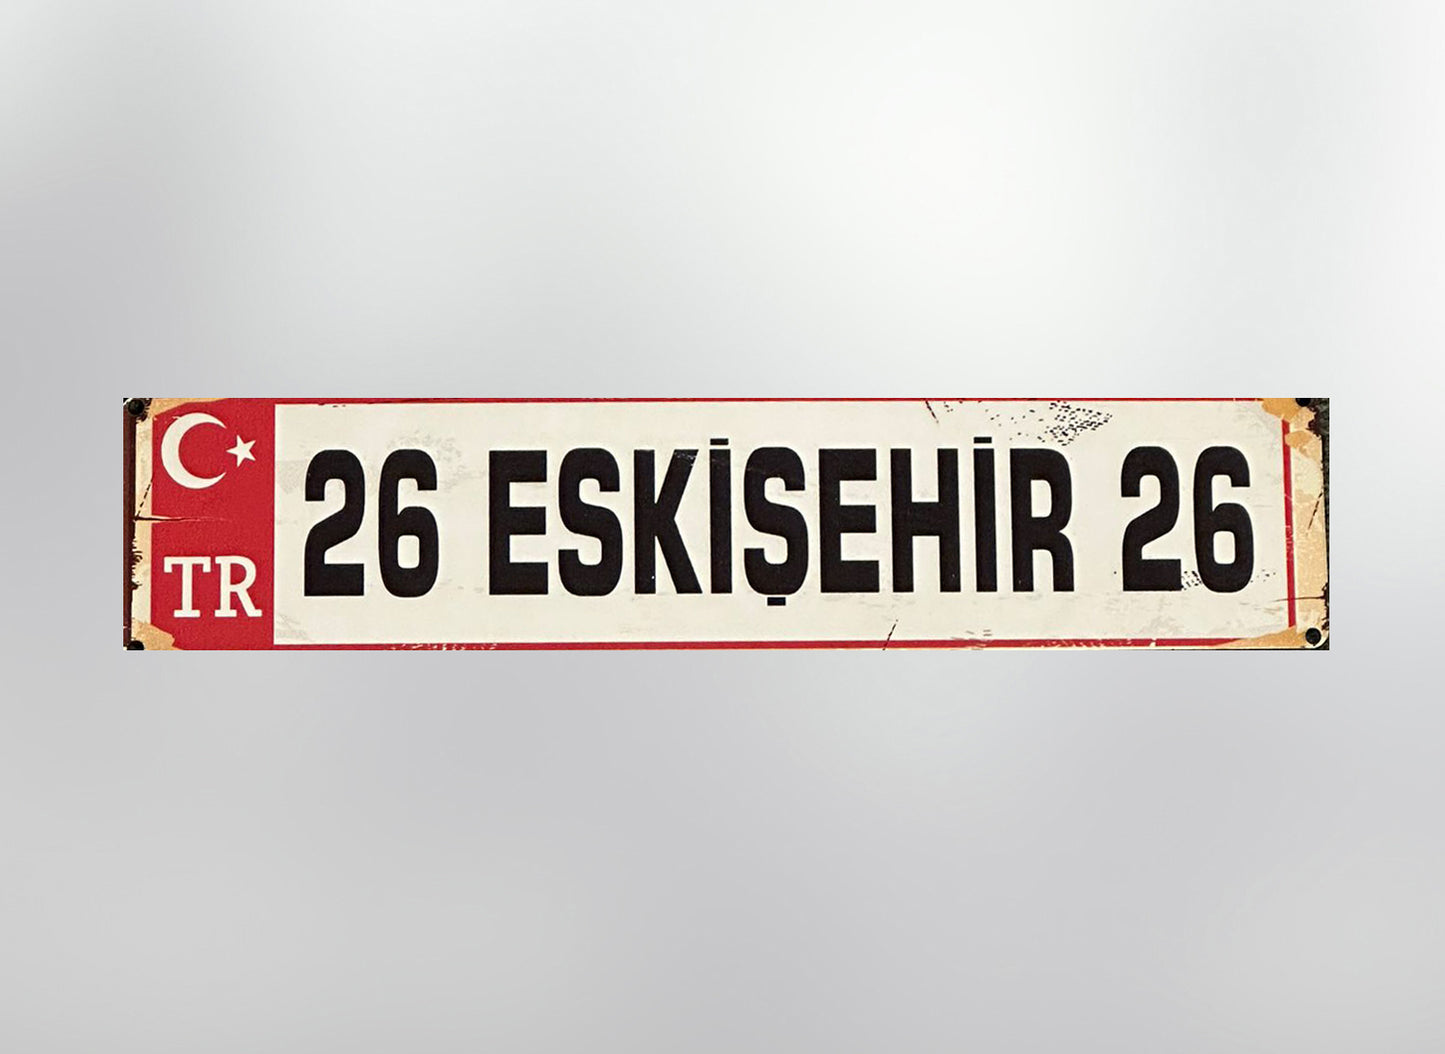 26 Eskişehir Plaka / Kennzeichen